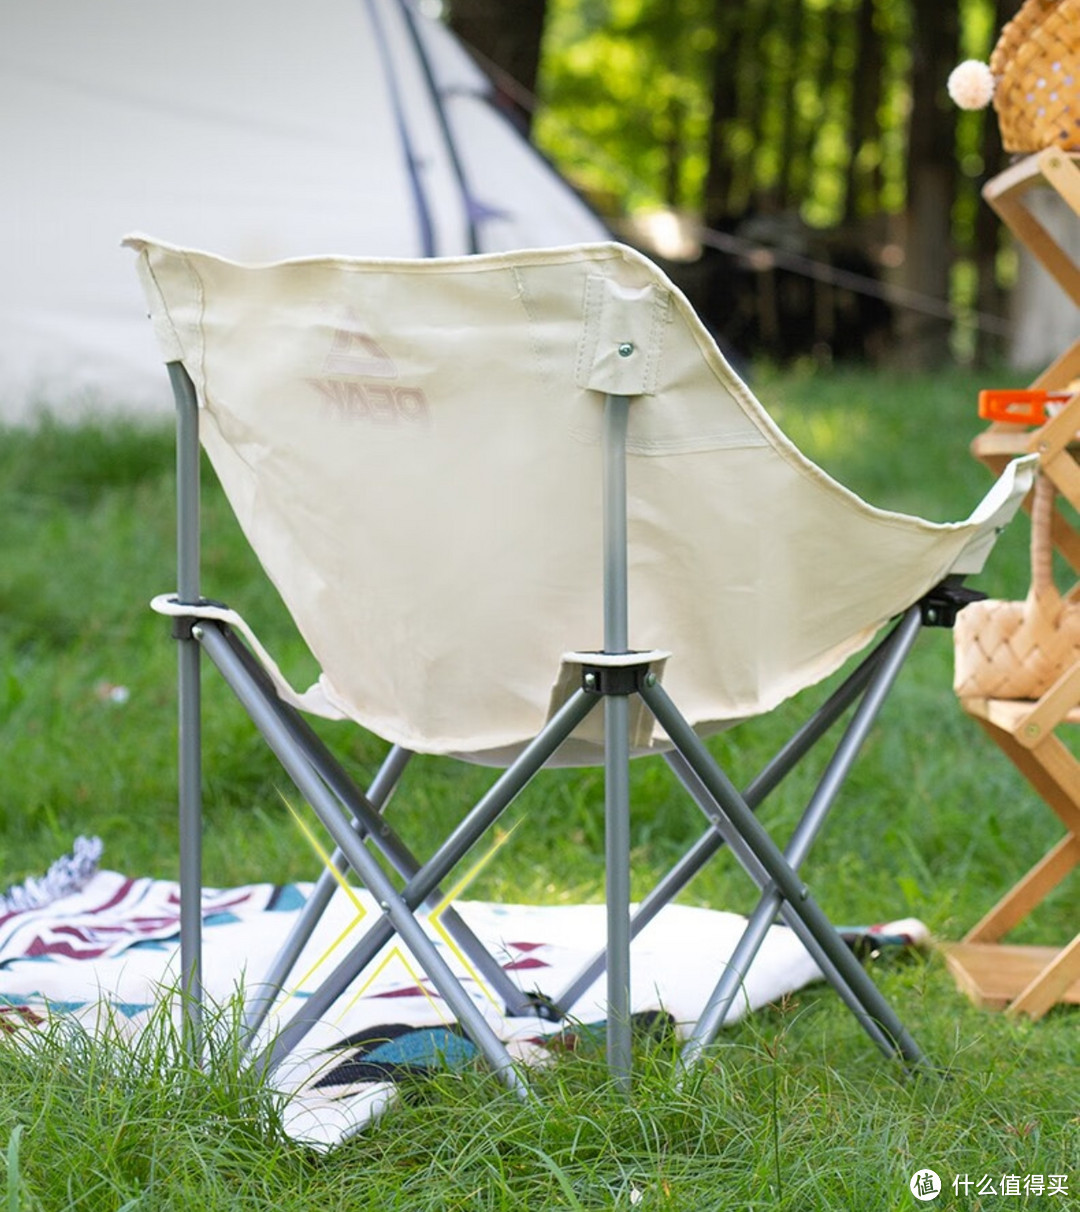 仅限3天 限时40元 匹克户外折叠椅 月亮椅 公园写生椅休闲钓鱼露营野营游玩椅子